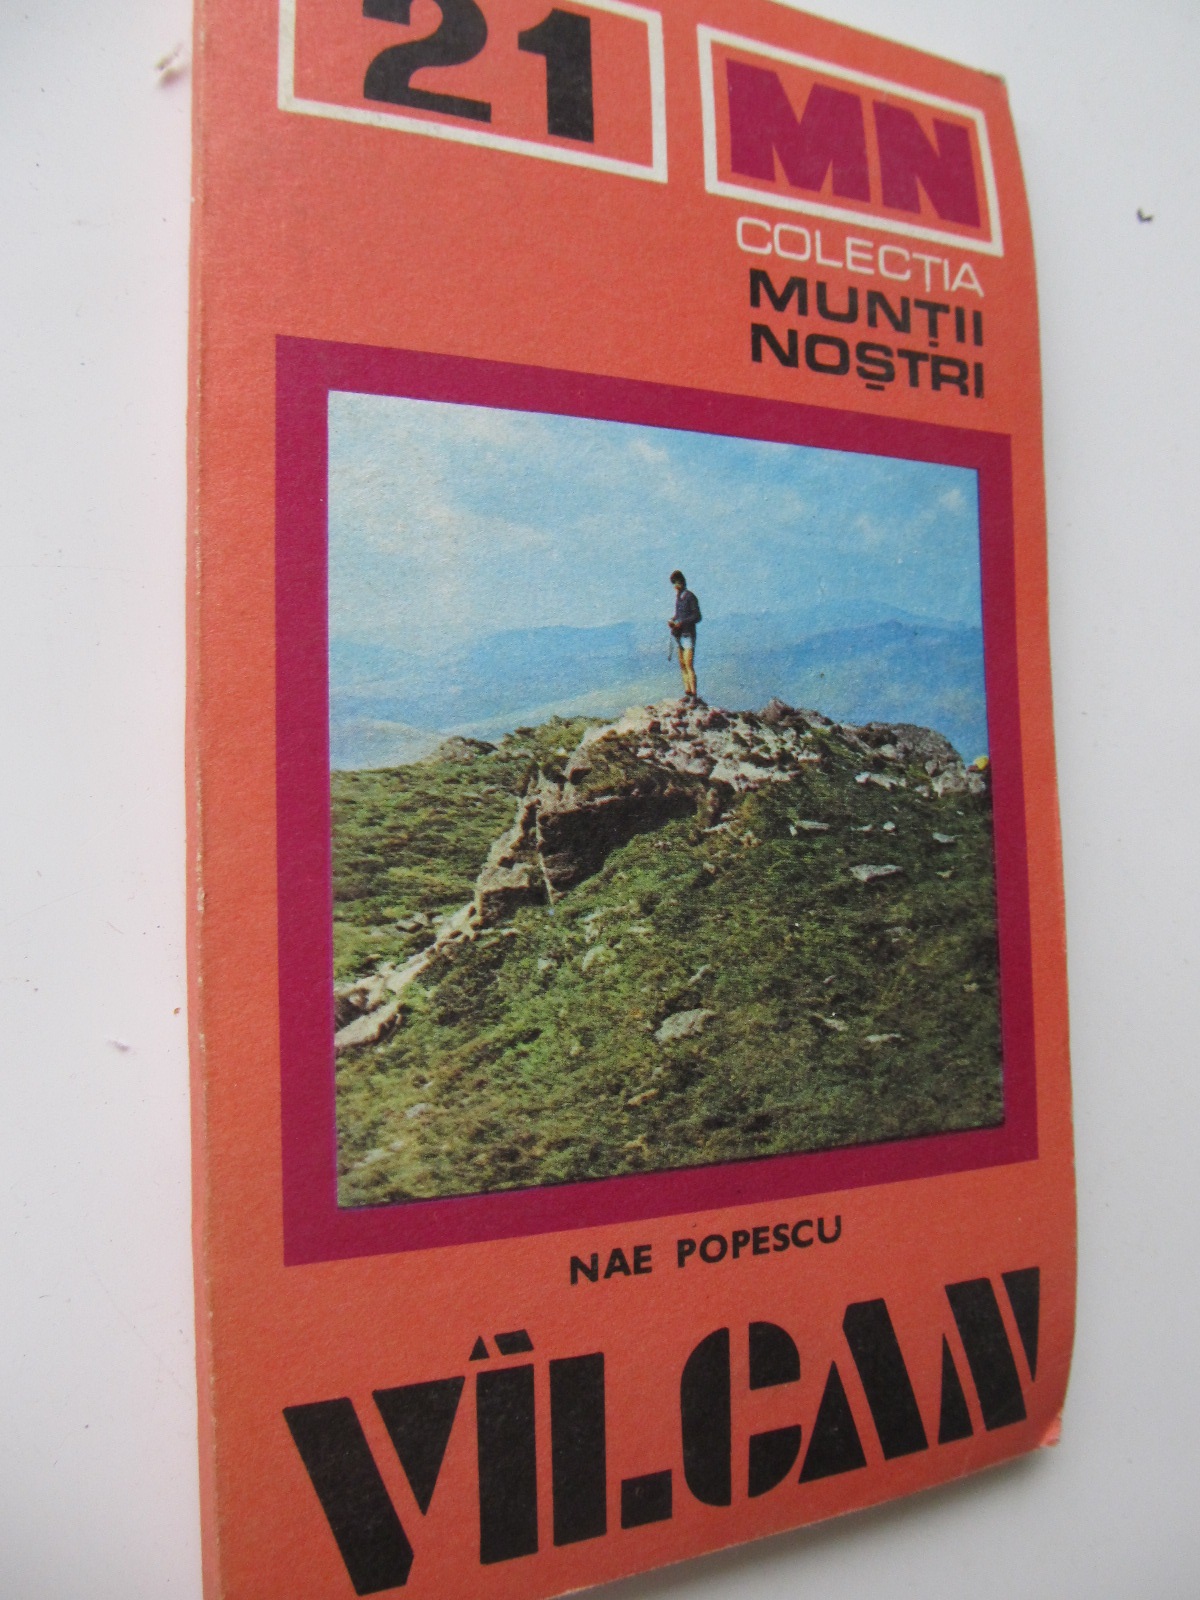 Carte Muntii Valcan (Vilcan) (21) - cu harta - Nae Popescu